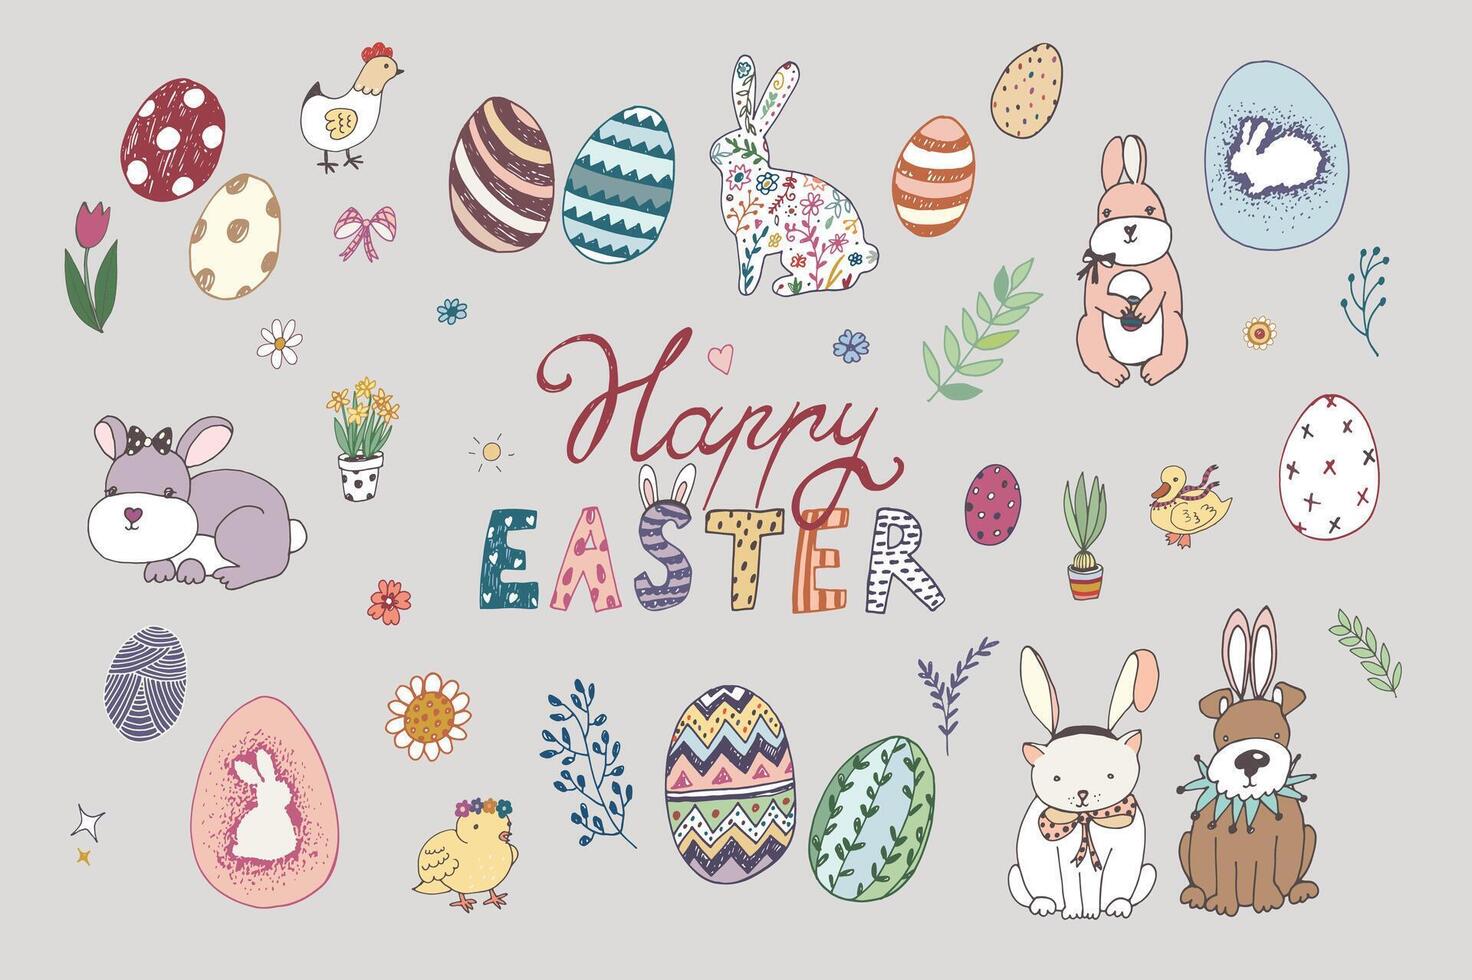 påsk ägg, kaniner, kyckling, blommor vår vektor illustrationer uppsättning.